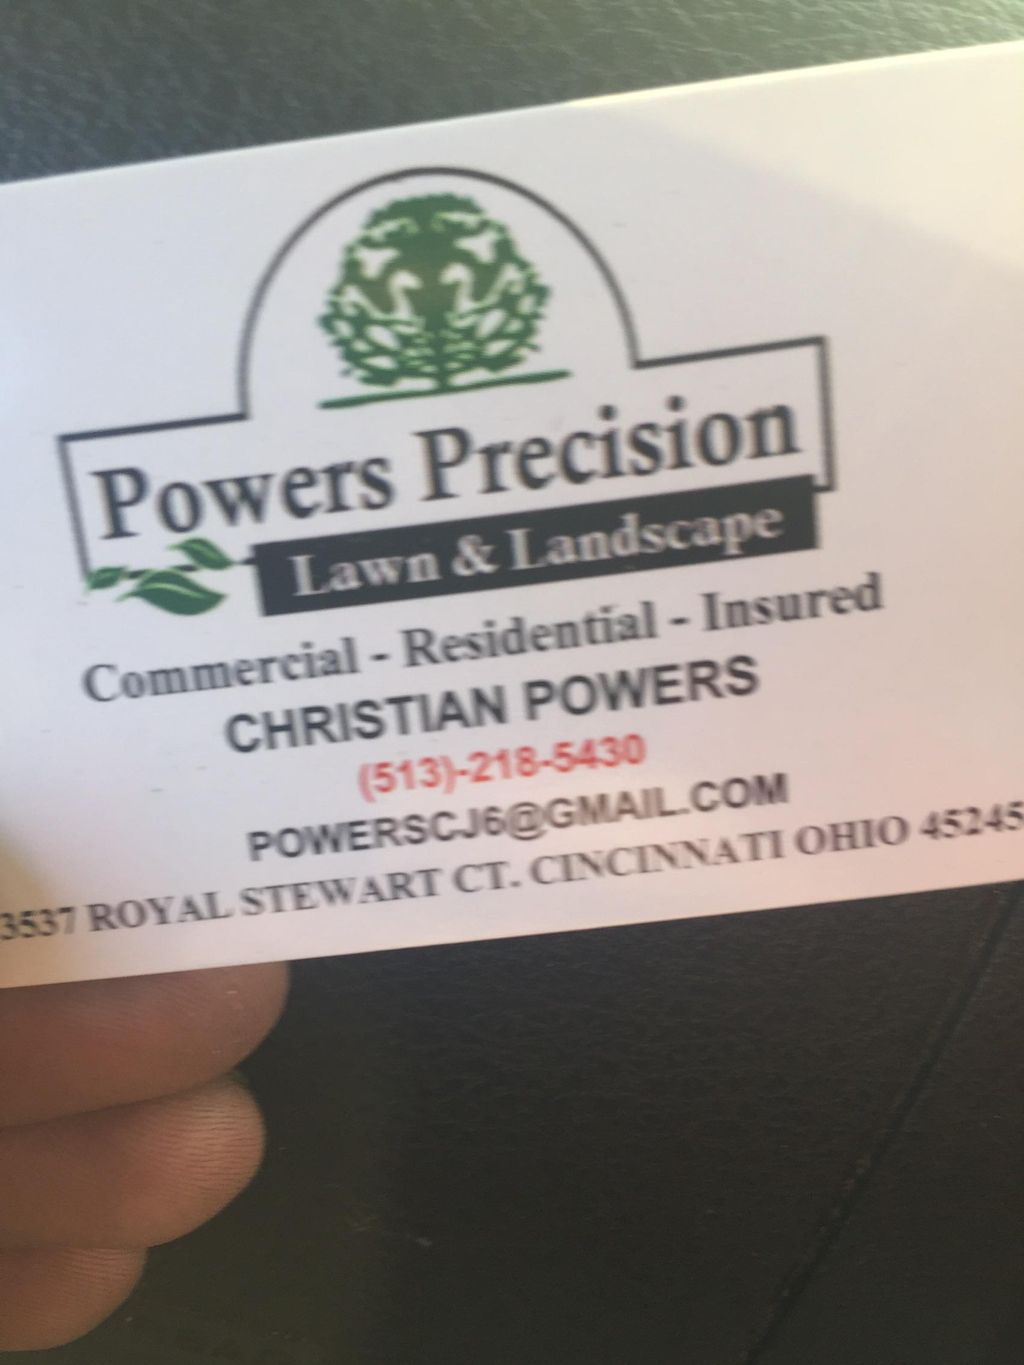 Powers Precision Lawn & Landscape, LLC